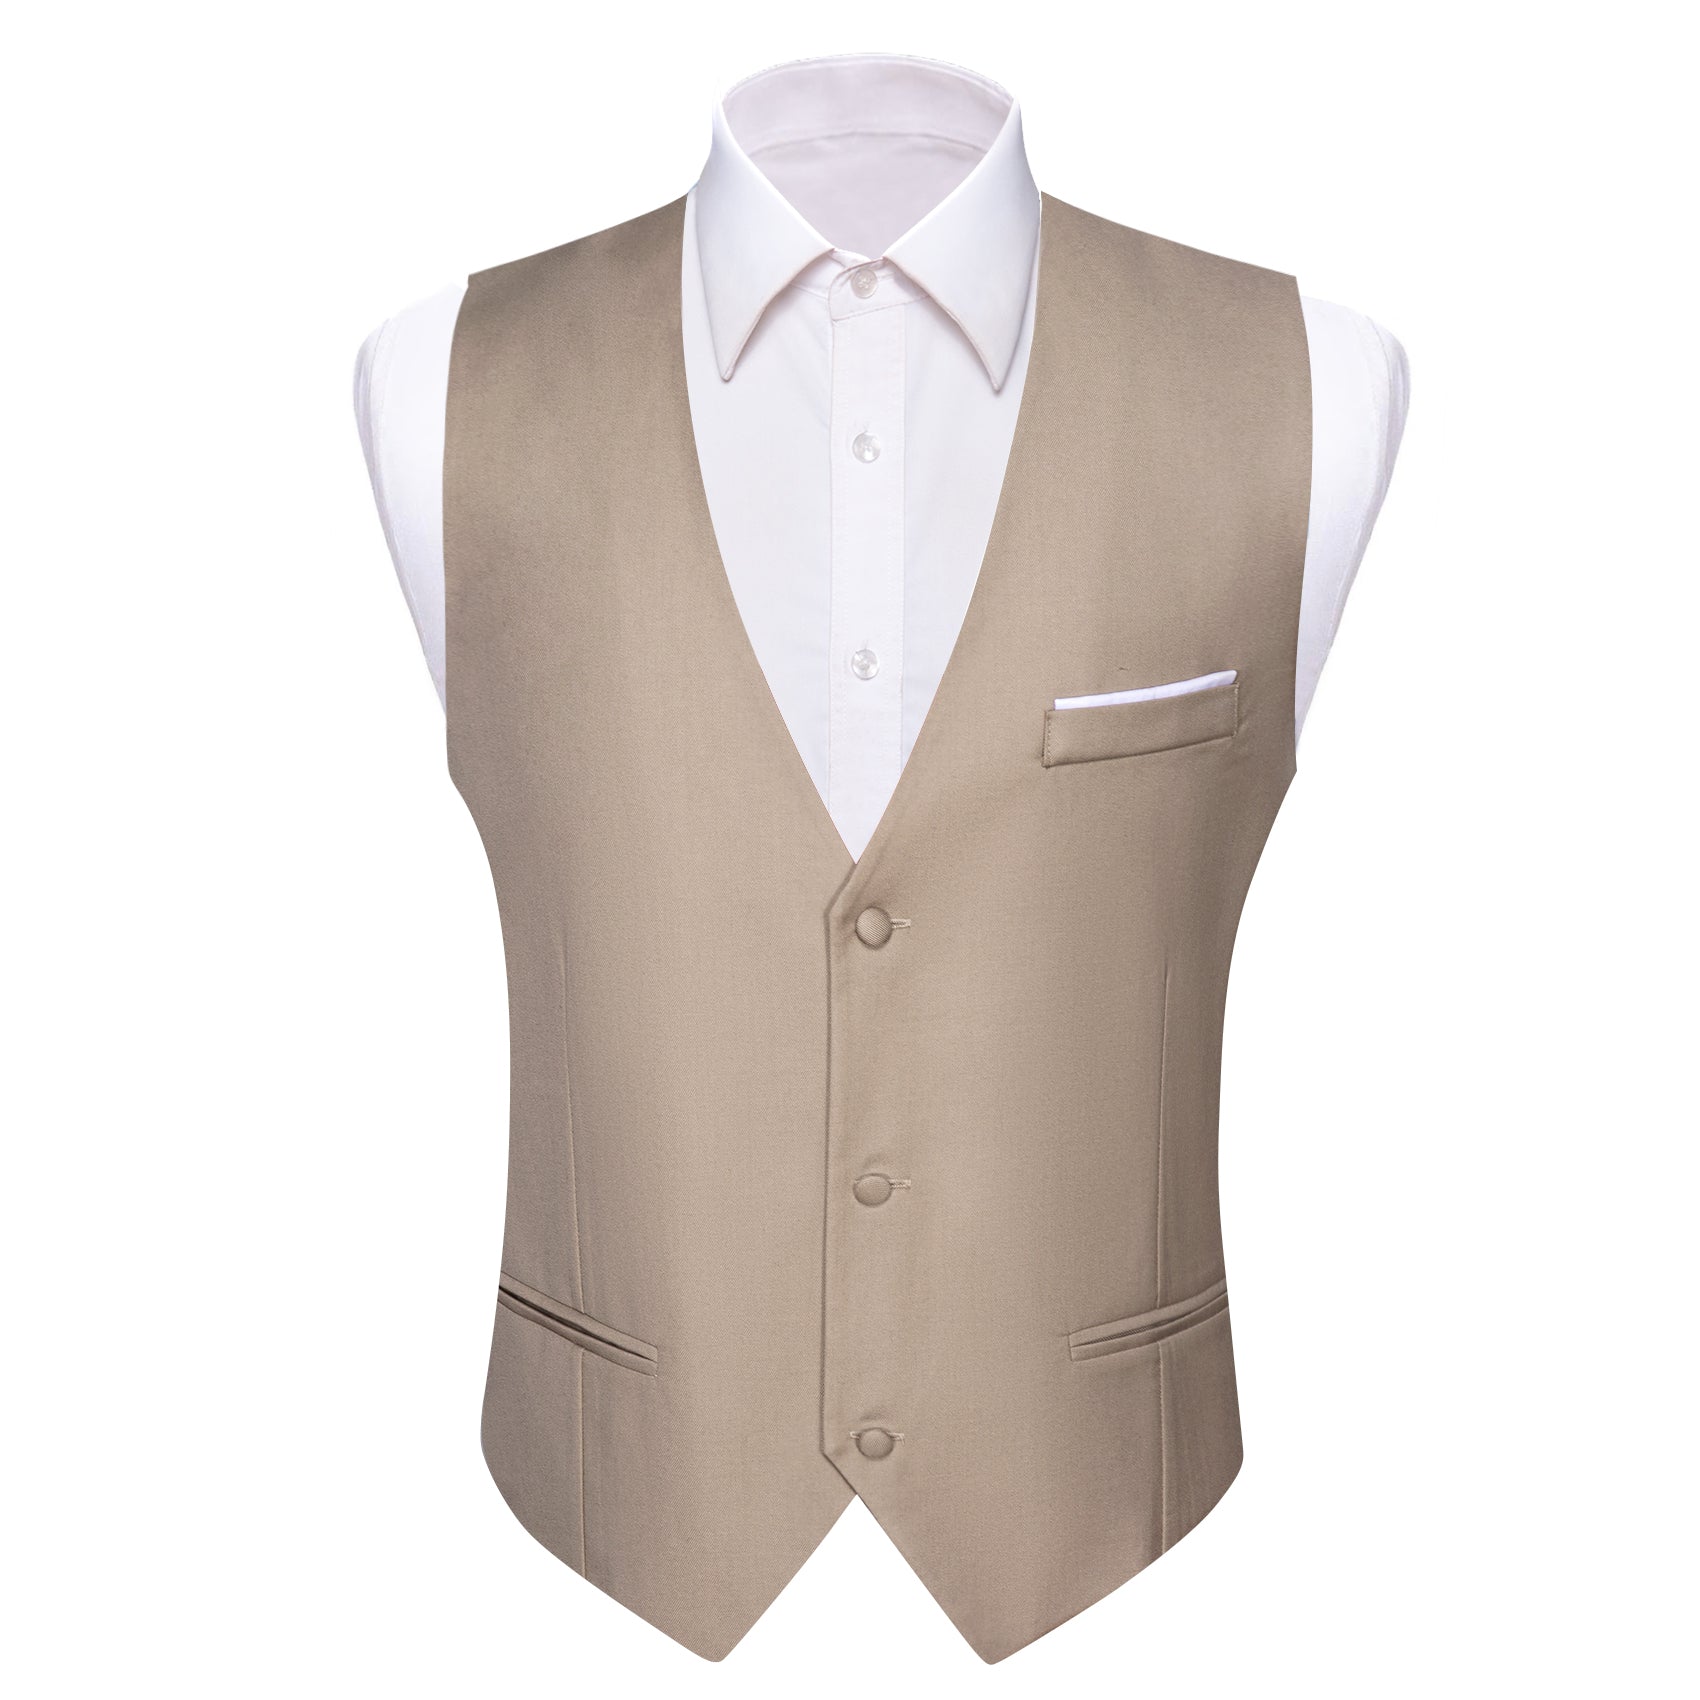 Barry.wang Men's Vest Formal Dark Khaki Solid V-Neck Waistcoat Vest for Business